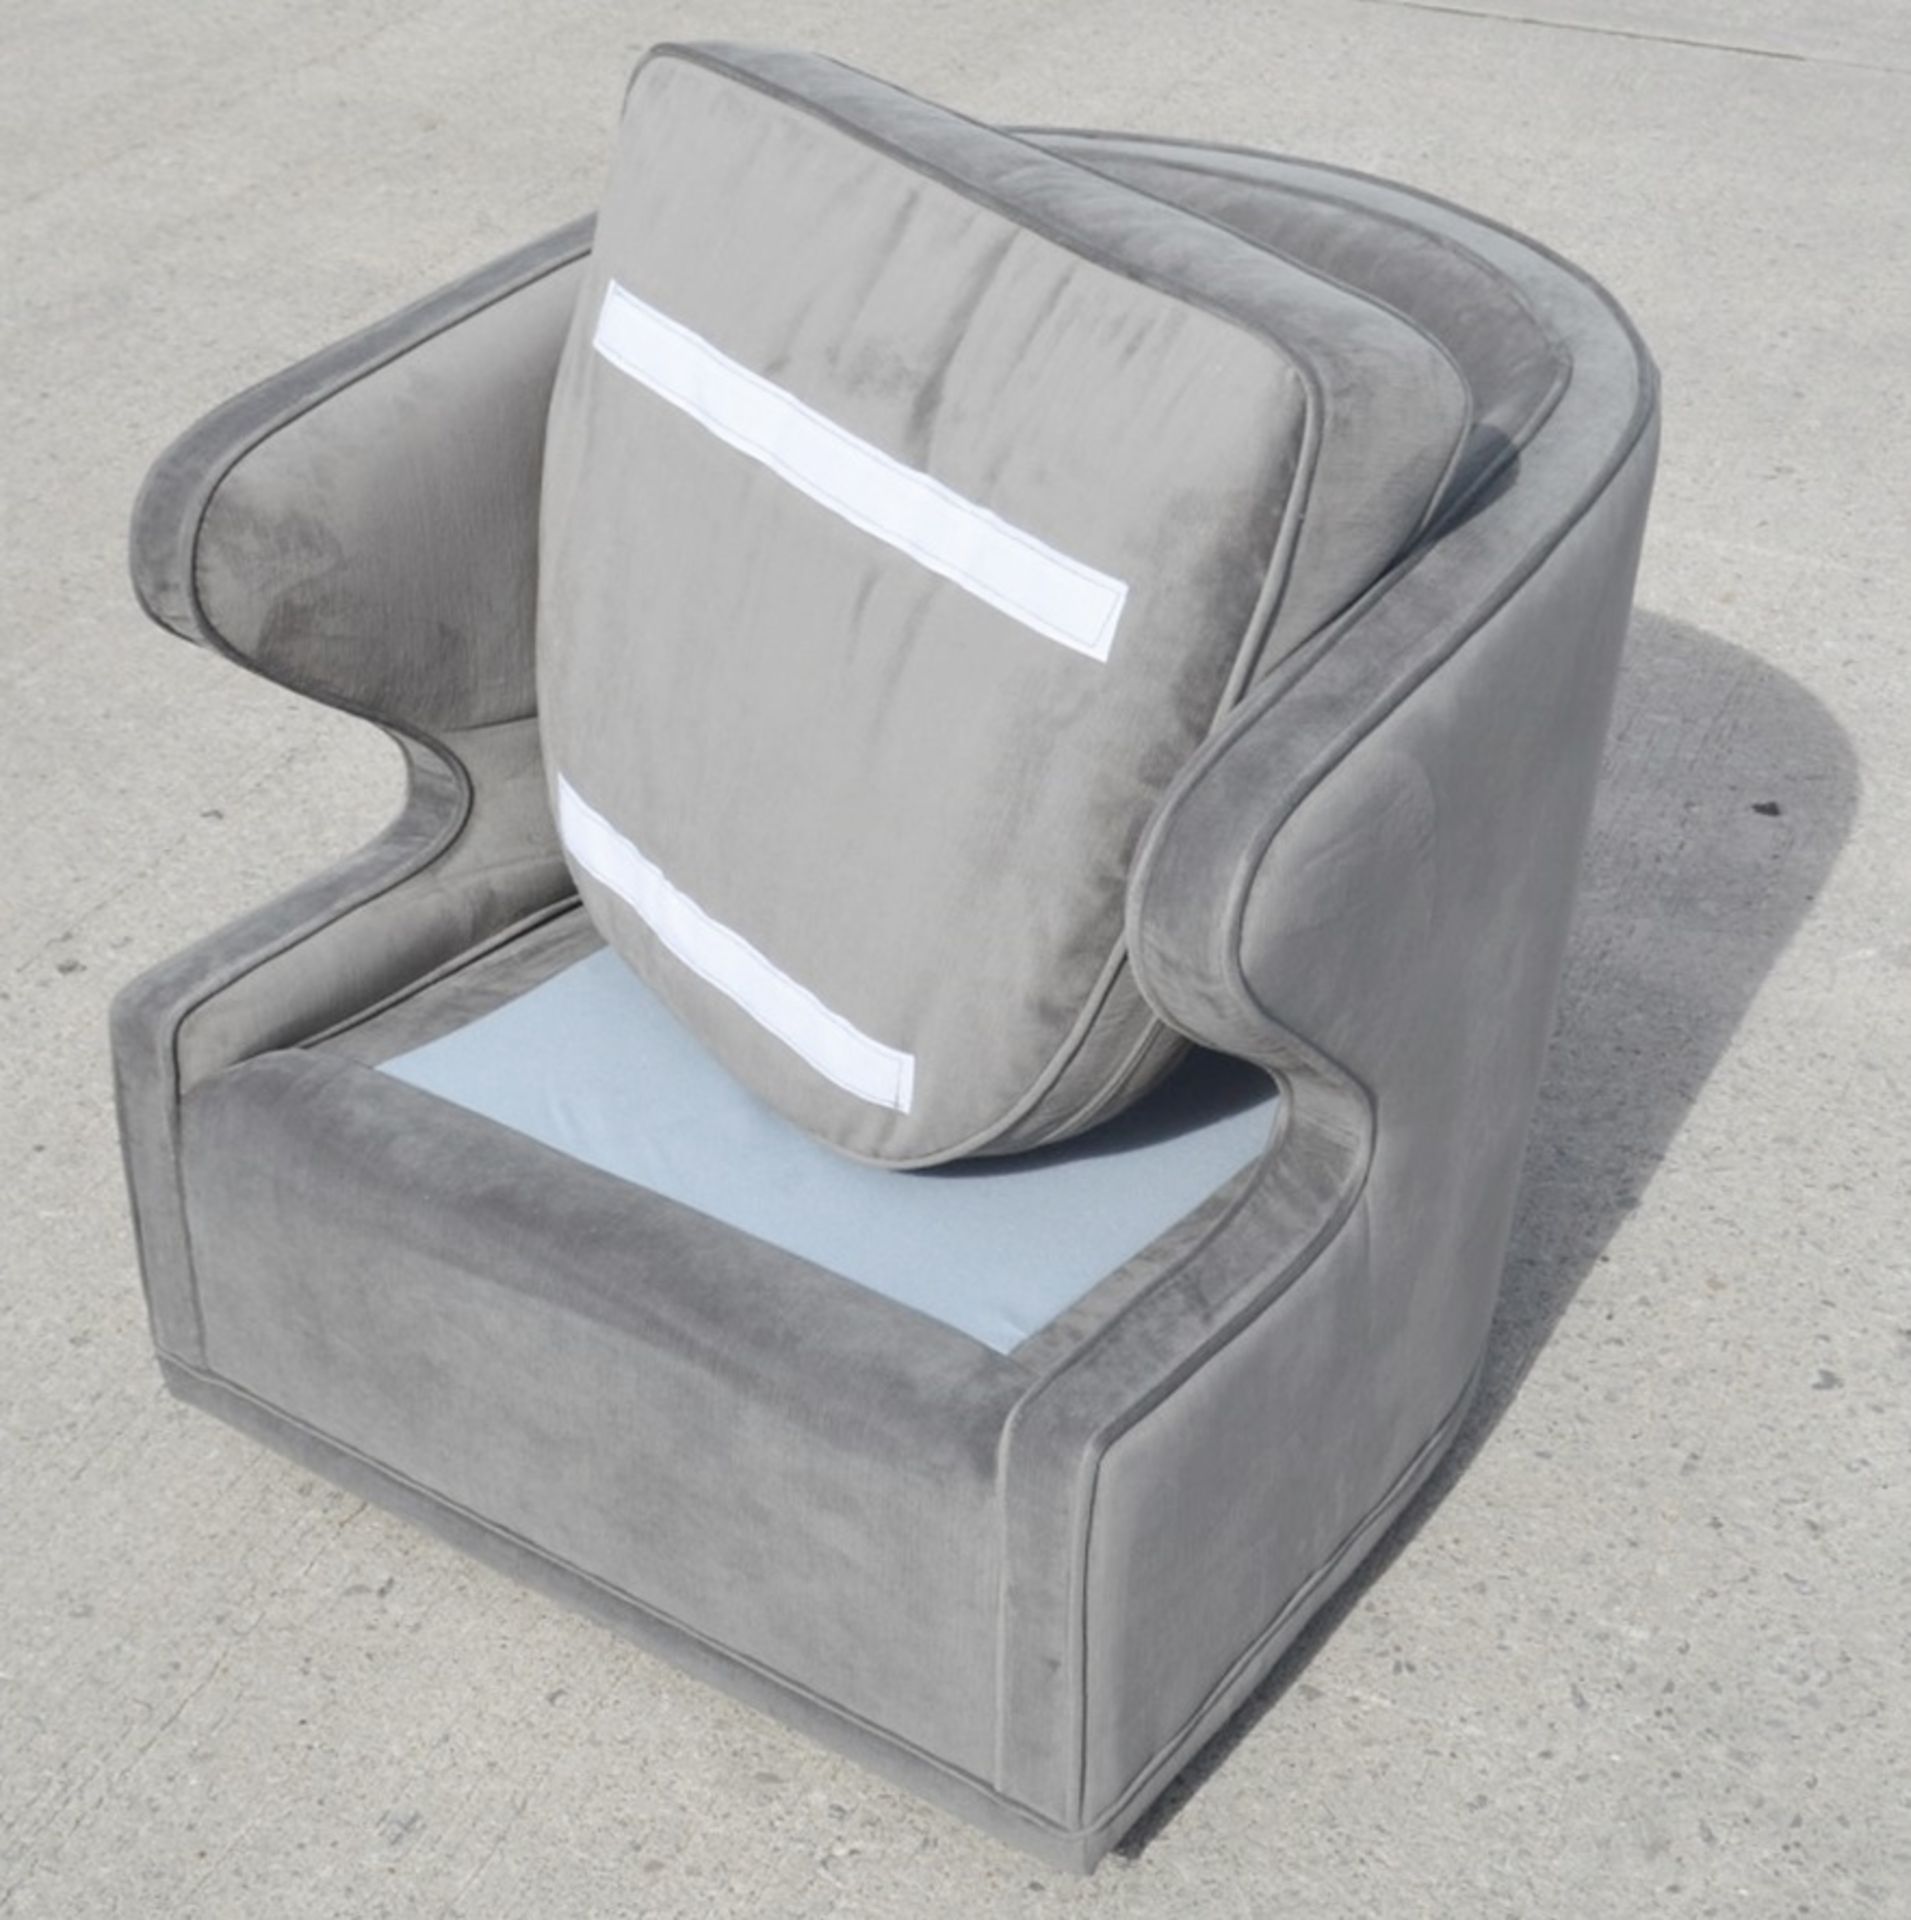 1 x EICHHOLTZ 'Dorset' Velvet Upholstered Chair In Granite Grey With Swivel Base - Ref: 5836384(B)/ - Image 11 of 13